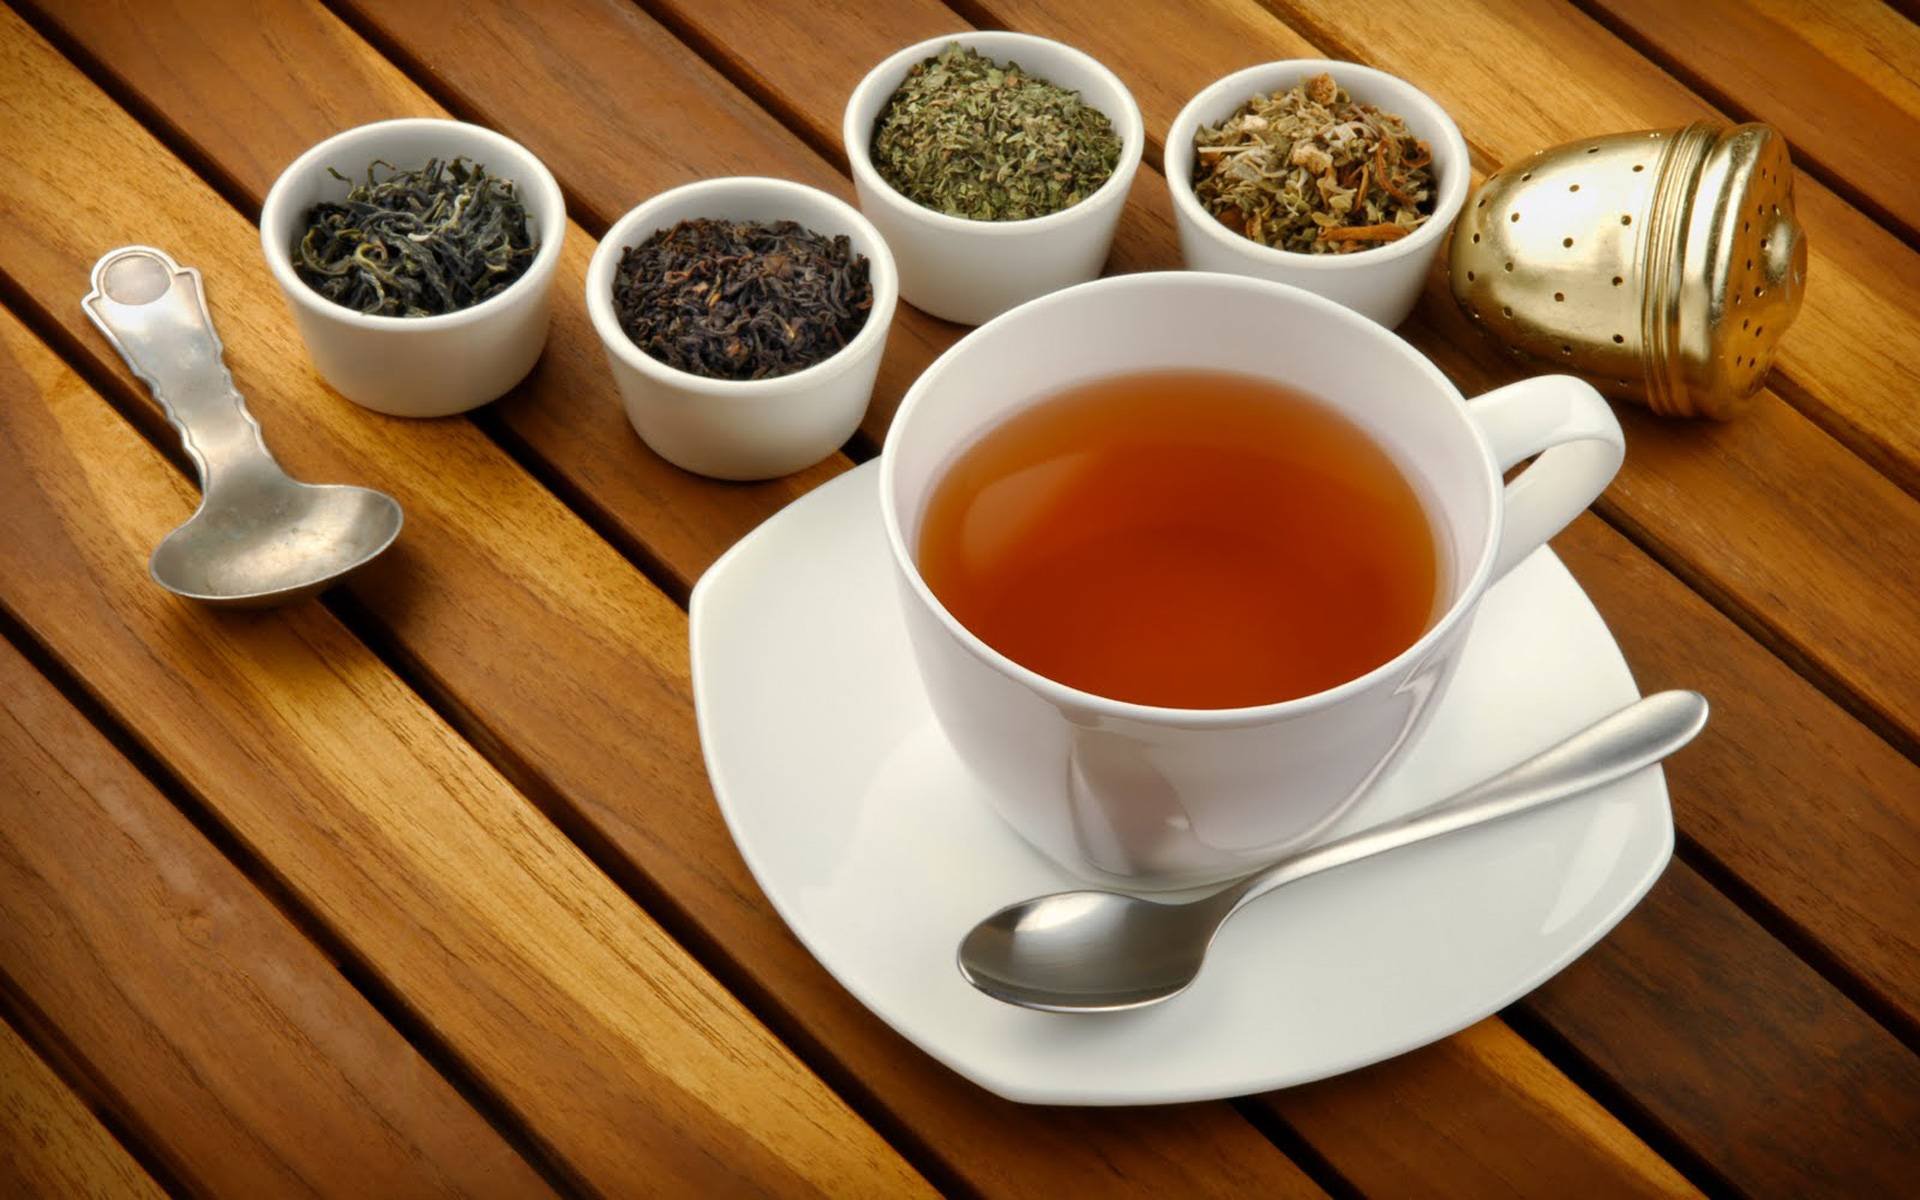 فى يوم الشاى العالمى.. 5 أنواع من الشاى فوائدها الصحية تجعلها "مشروب شتوى مثالى"